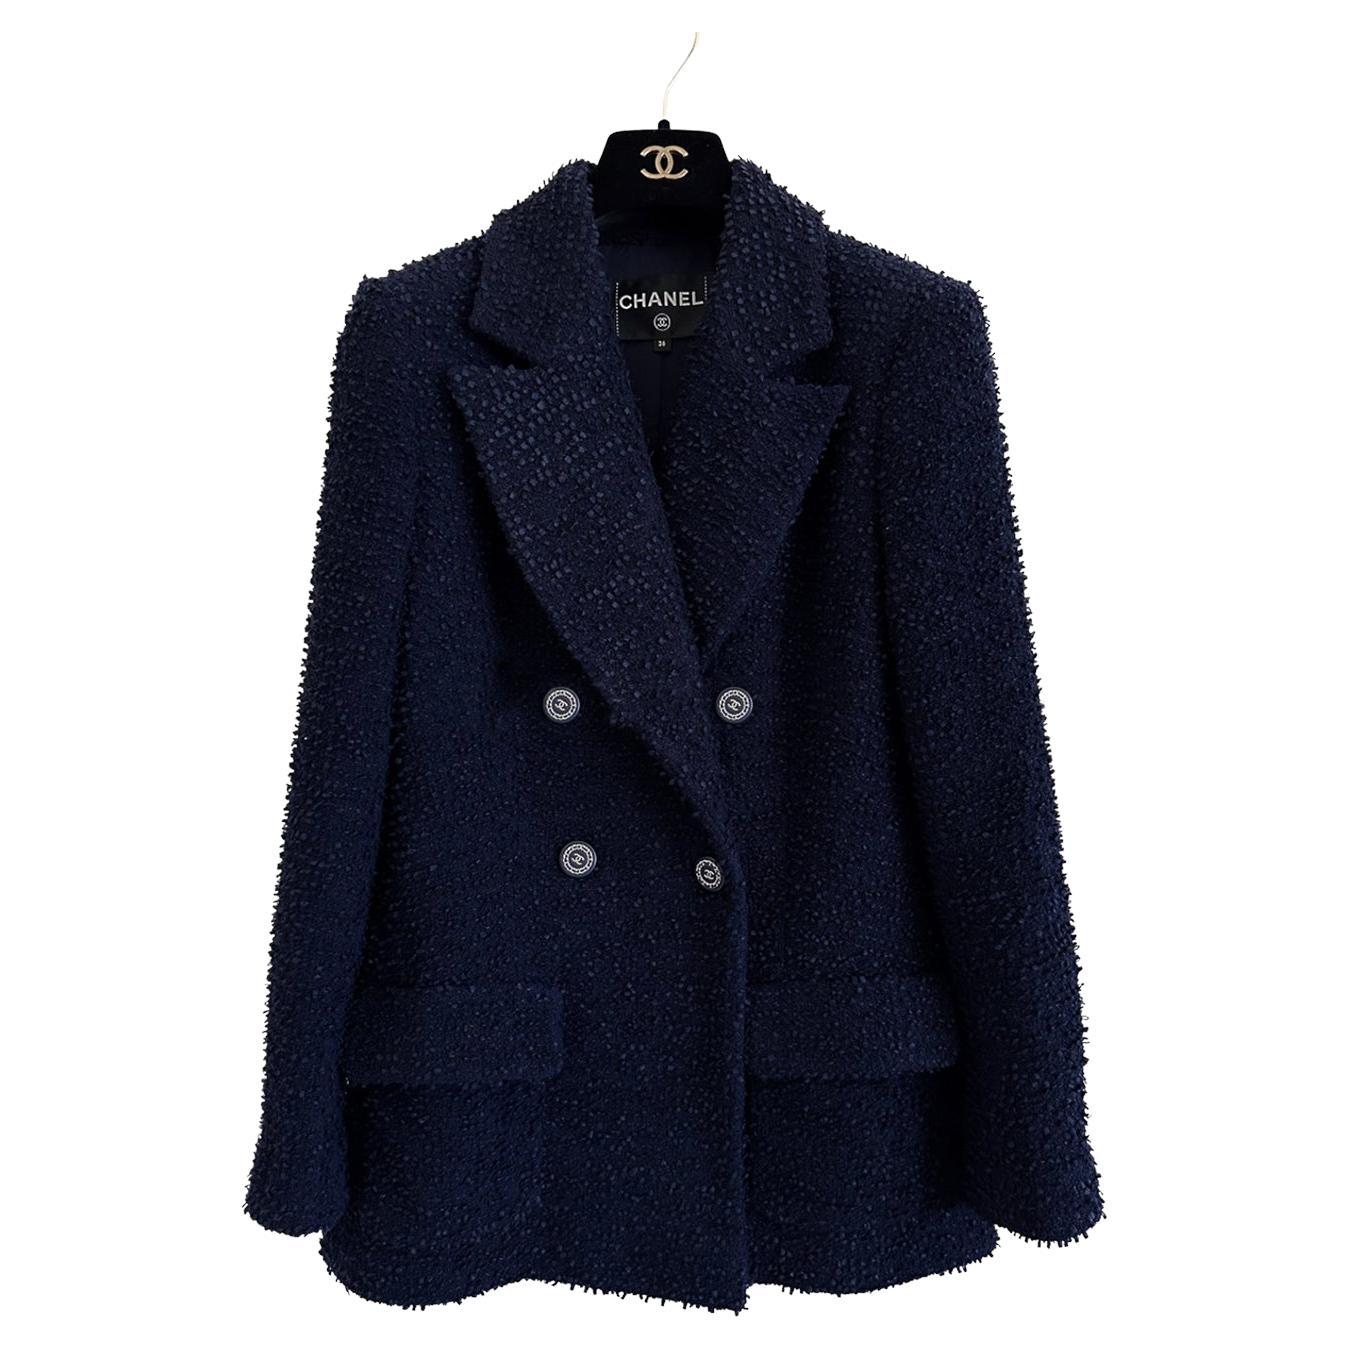 chanel blue tweed jacket